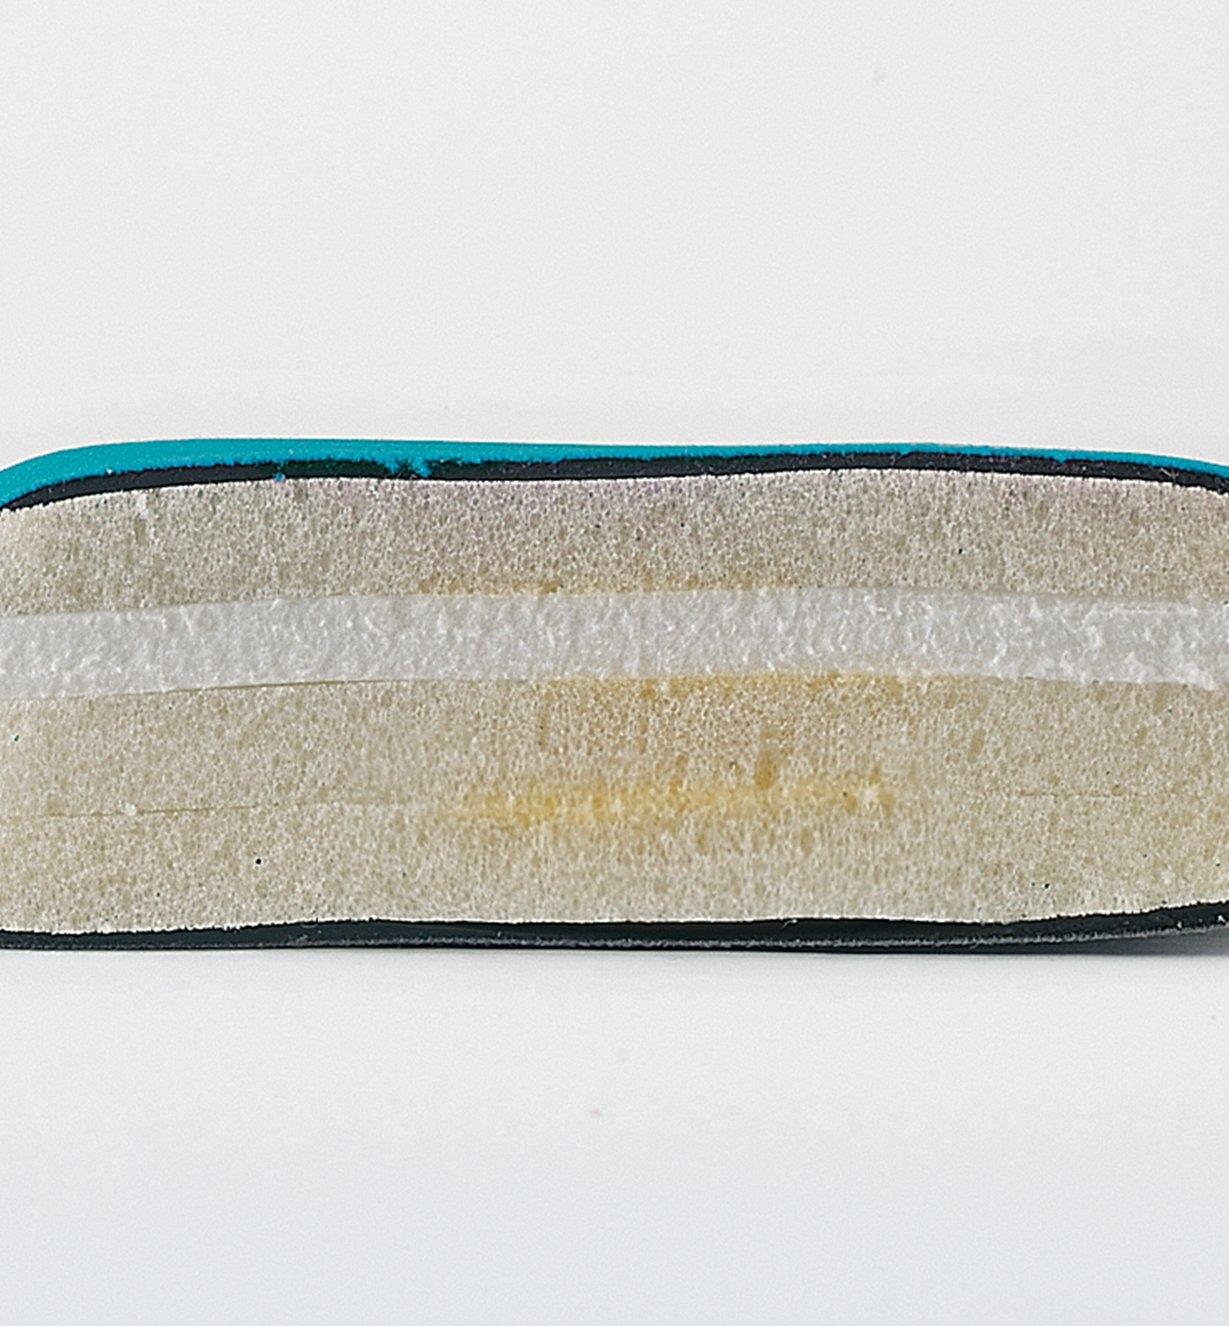 Coupe transversale d'une genouillère montrant le noyau de mousse EVA entre deux couches de mousse viscoélastique